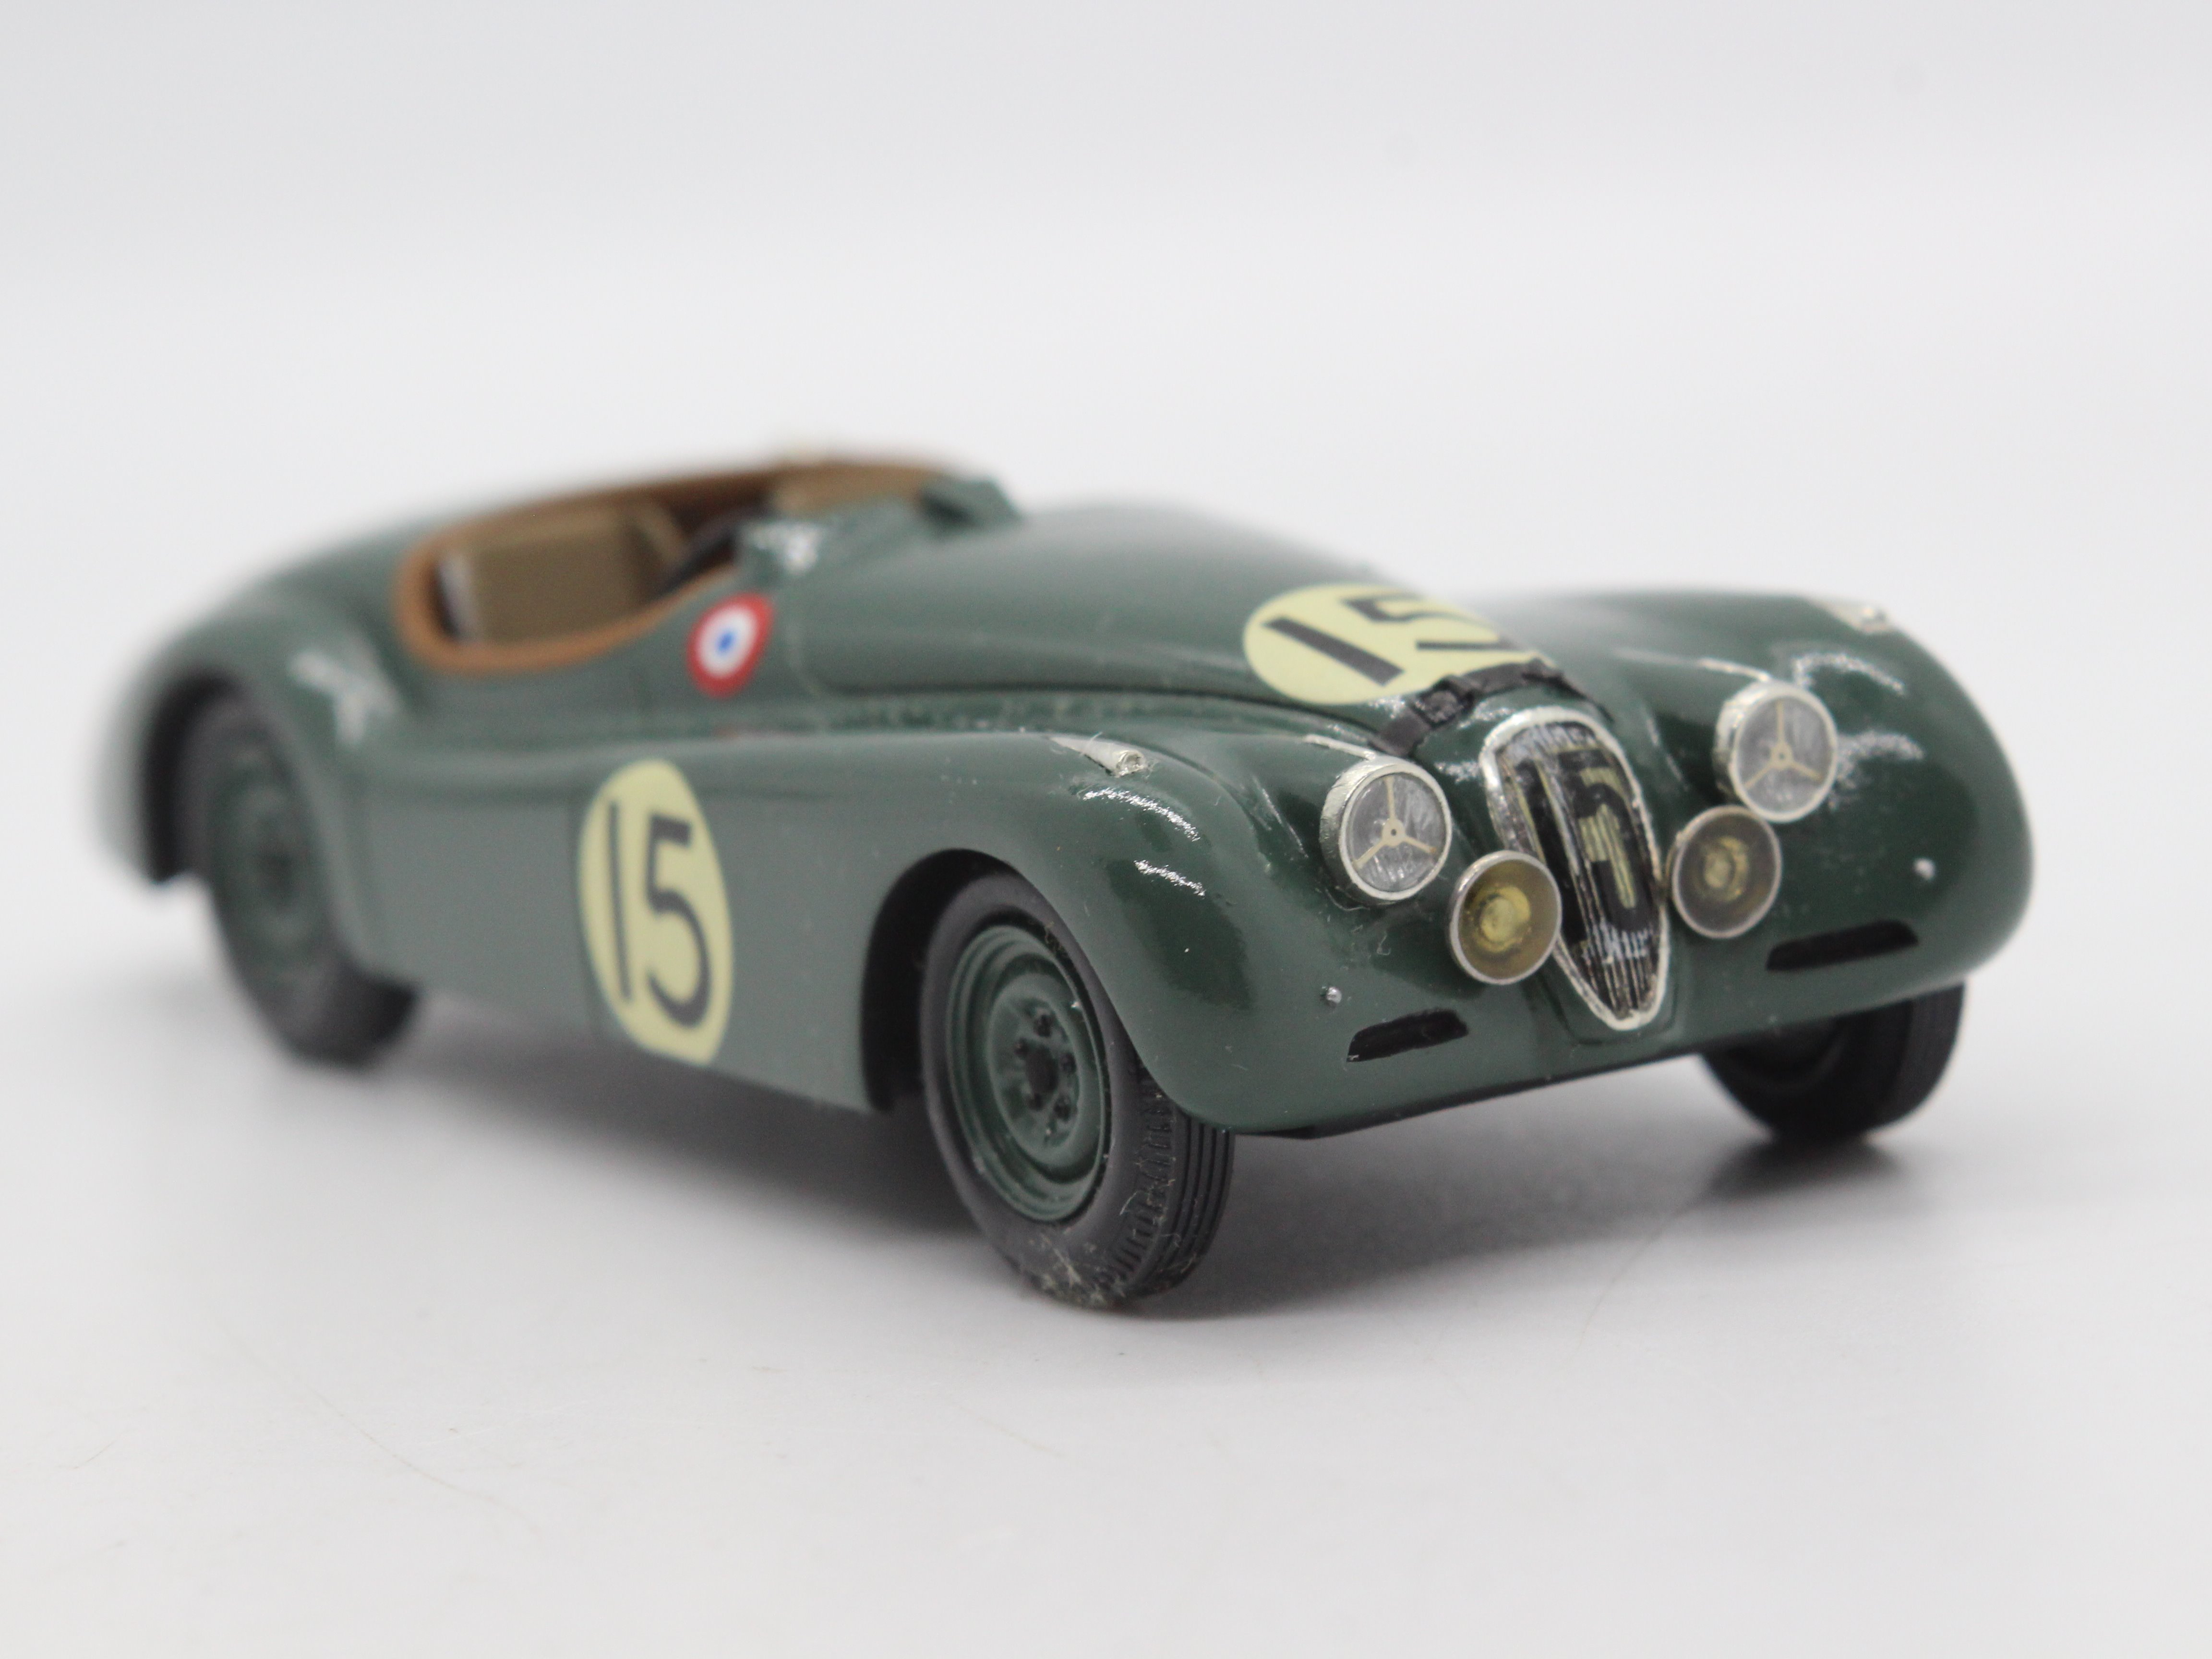 MPH Models, Tim Dyke - A boxed MPH Models #710 Jaguar XK120 Le Mans 1950. - Image 7 of 13